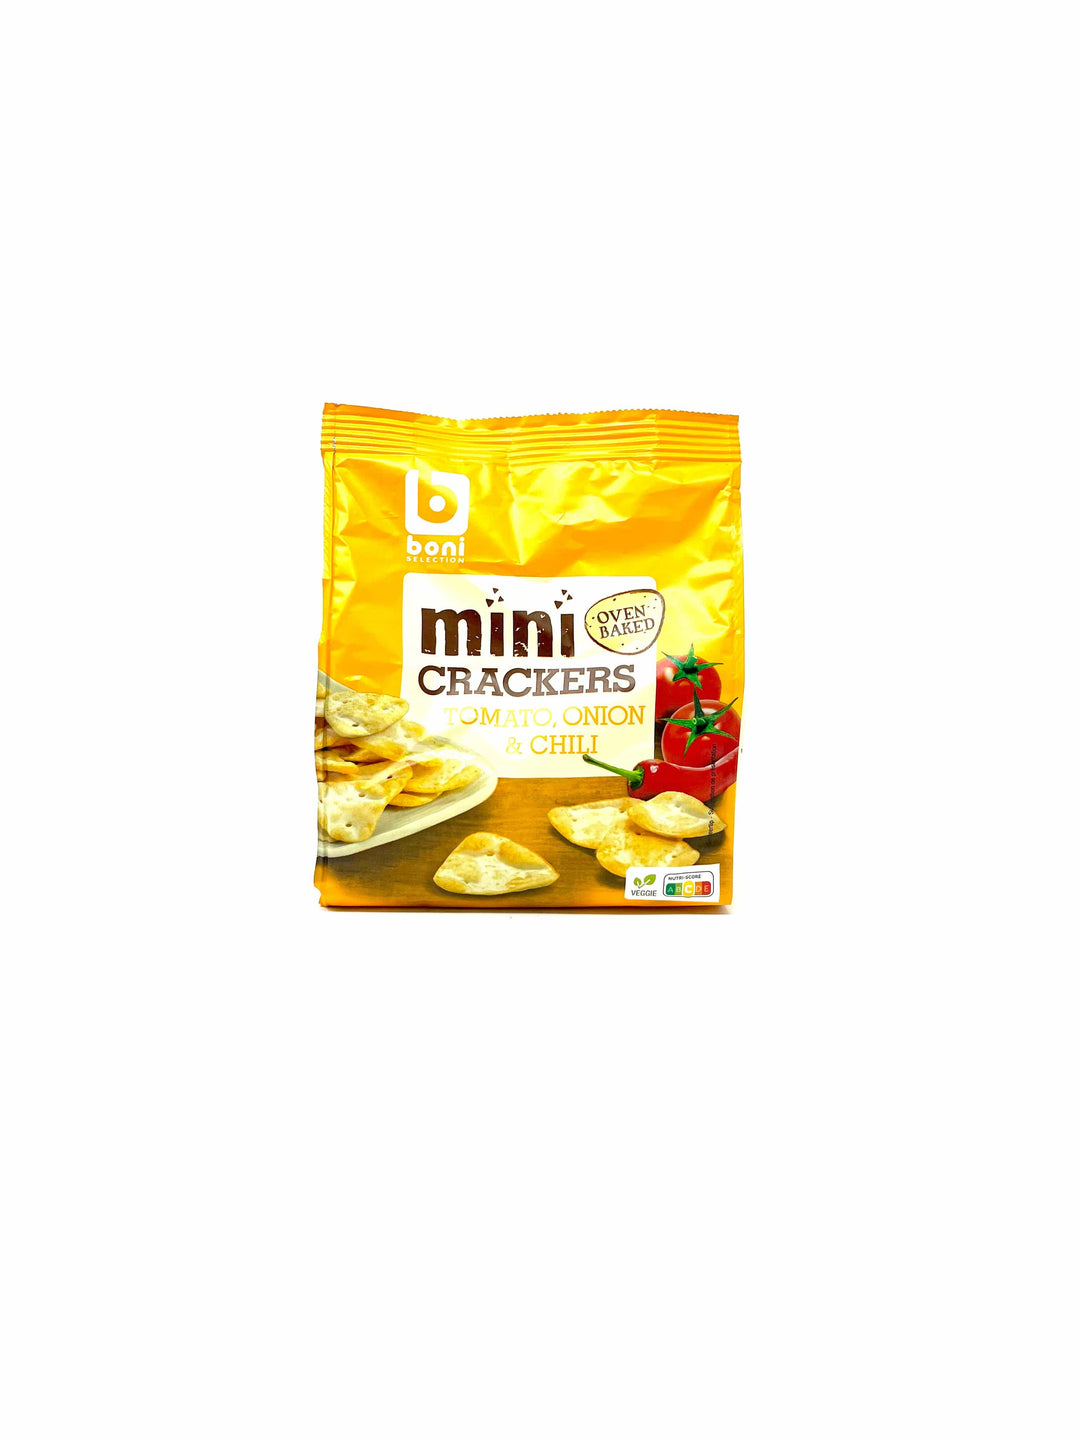 Boni Mini Crackers Tomato, Onion & Chili 125g